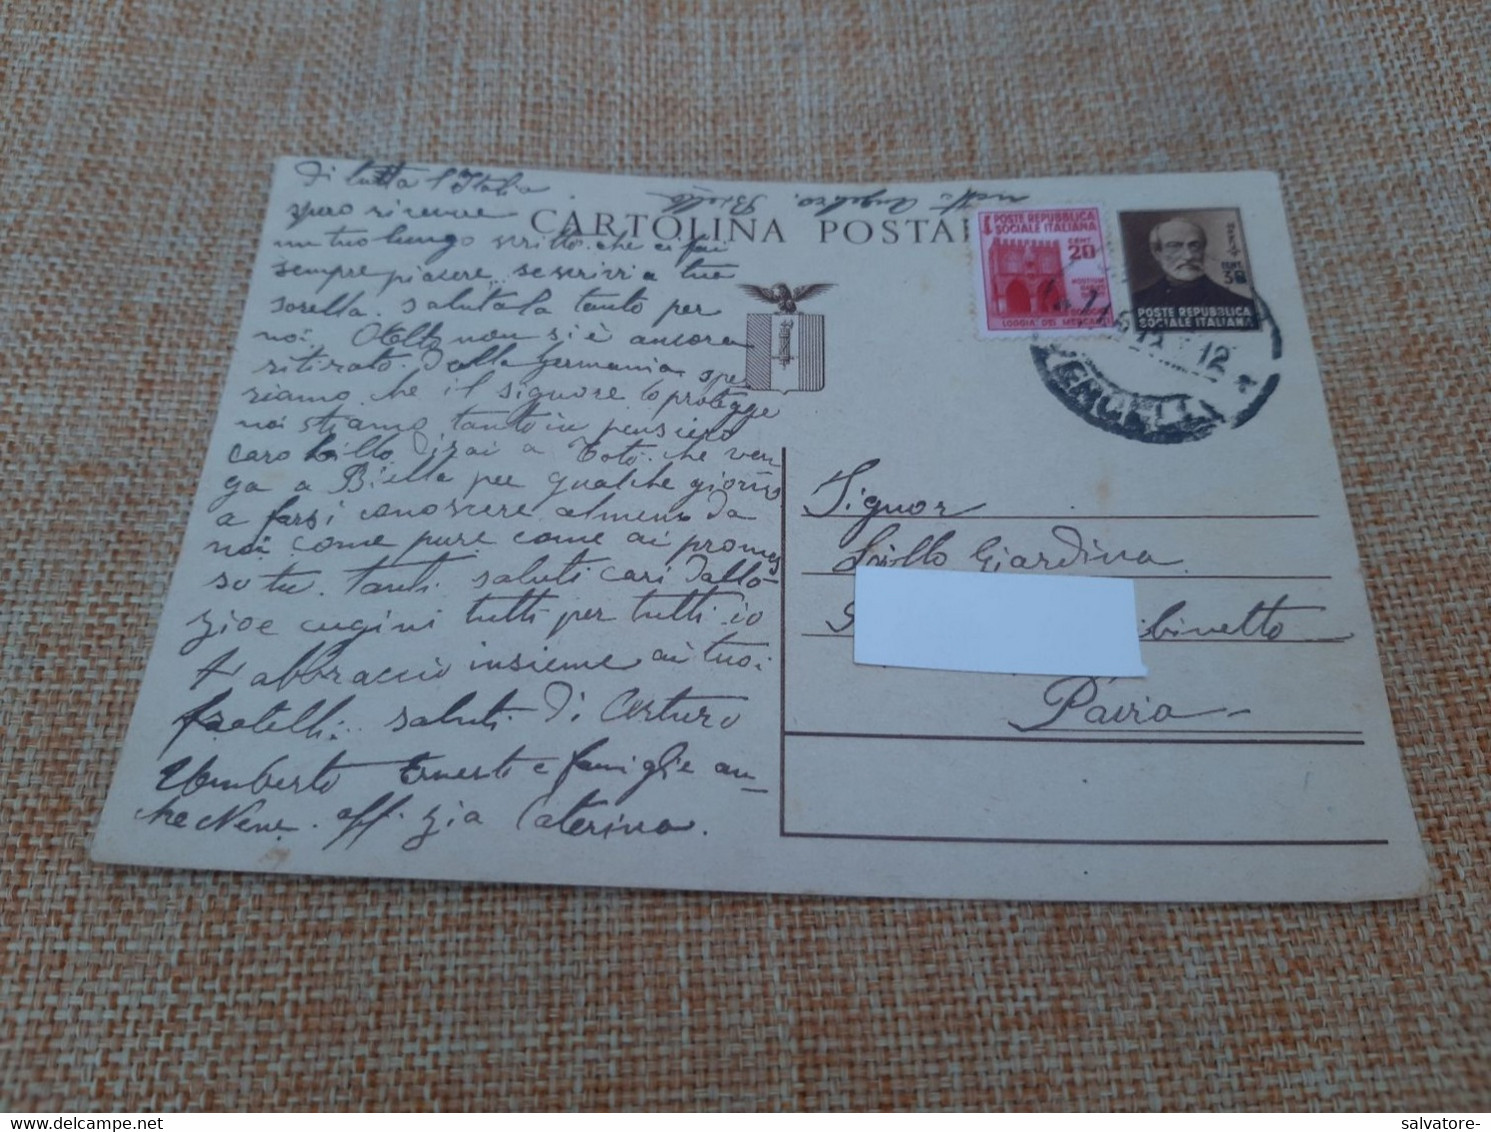 CARTOLINA POSTALE REPUBBLICA SOCIALE LIRE 30 C0N AGGIUNTA LIRE 20- 1945 - Stamped Stationery